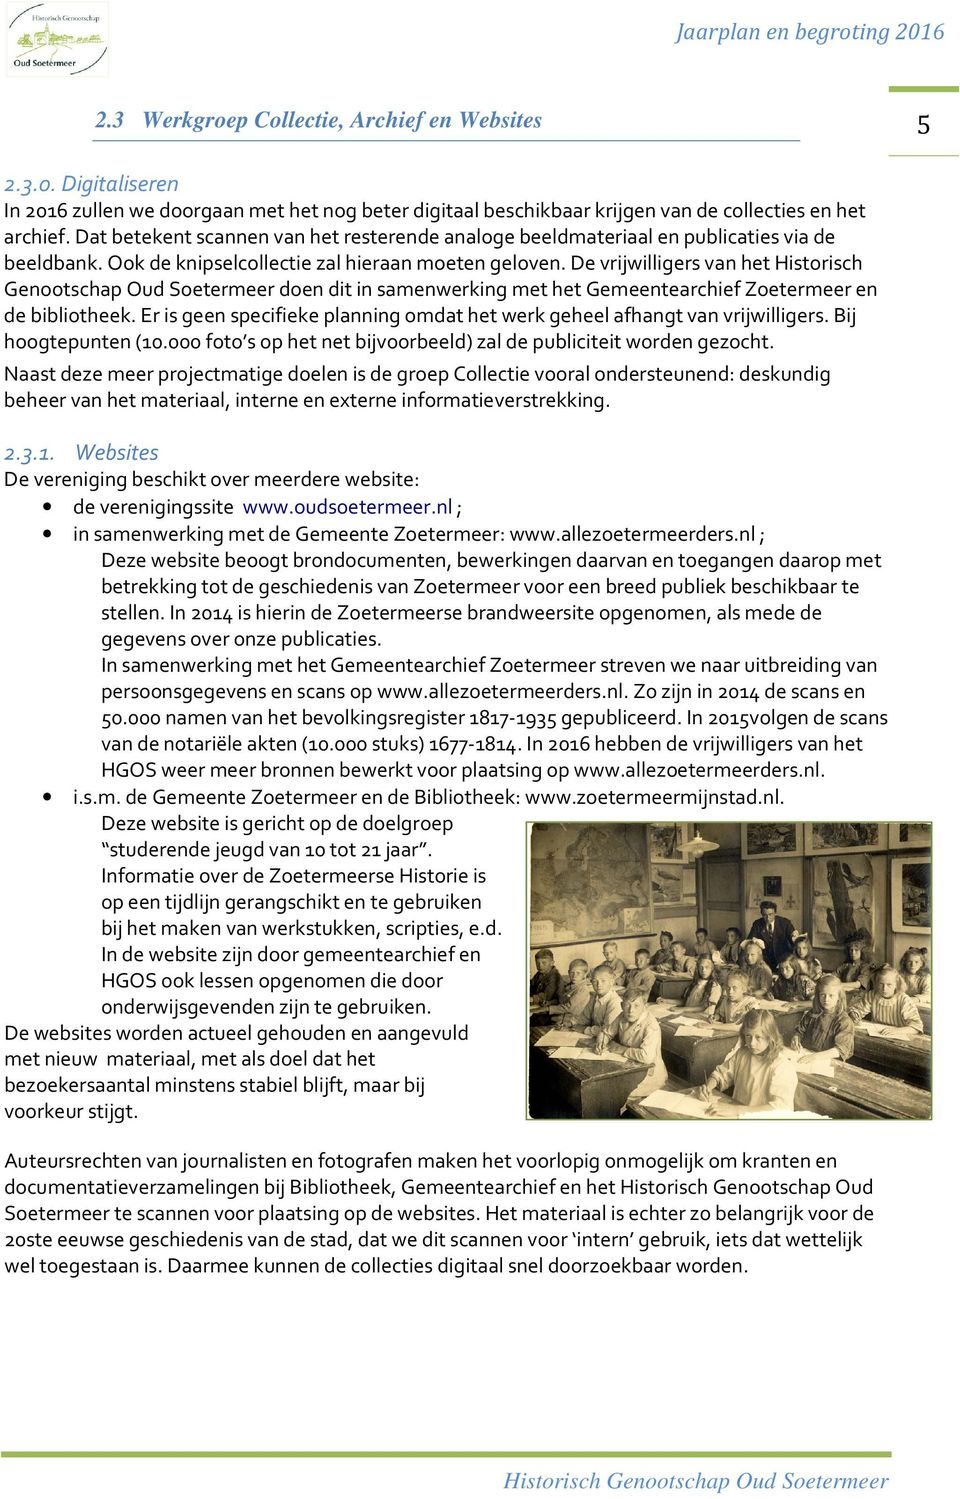 De vrijwilligers van het Historisch Genootschap Oud Soetermeer doen dit in samenwerking met het Gemeentearchief Zoetermeer en de bibliotheek.